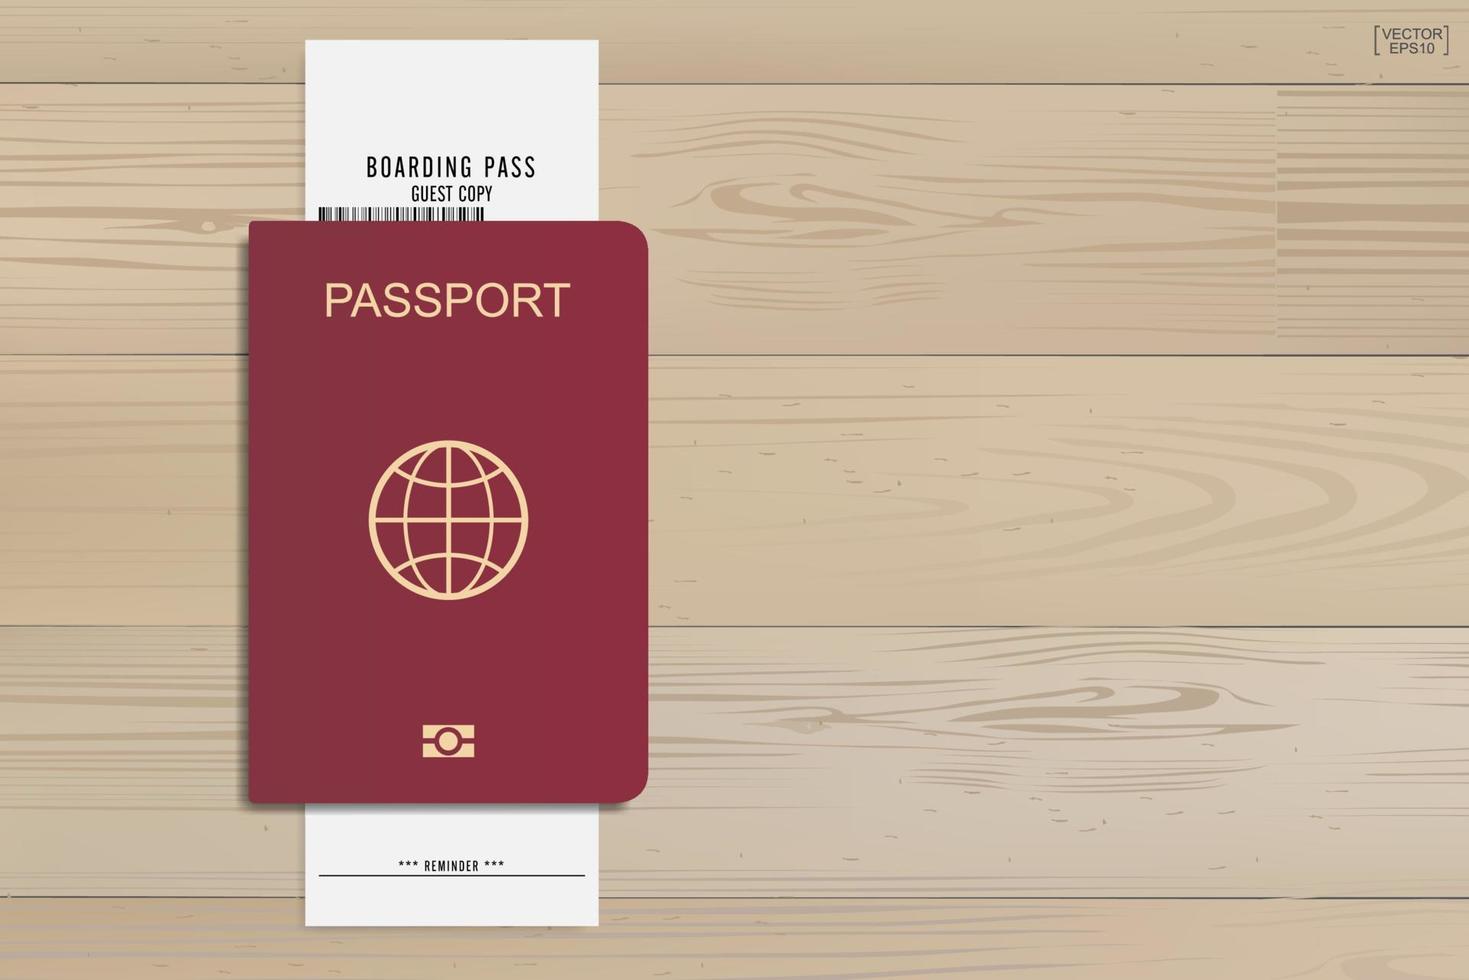 pass och boardingkortbiljett på träbakgrund. vektor. vektor